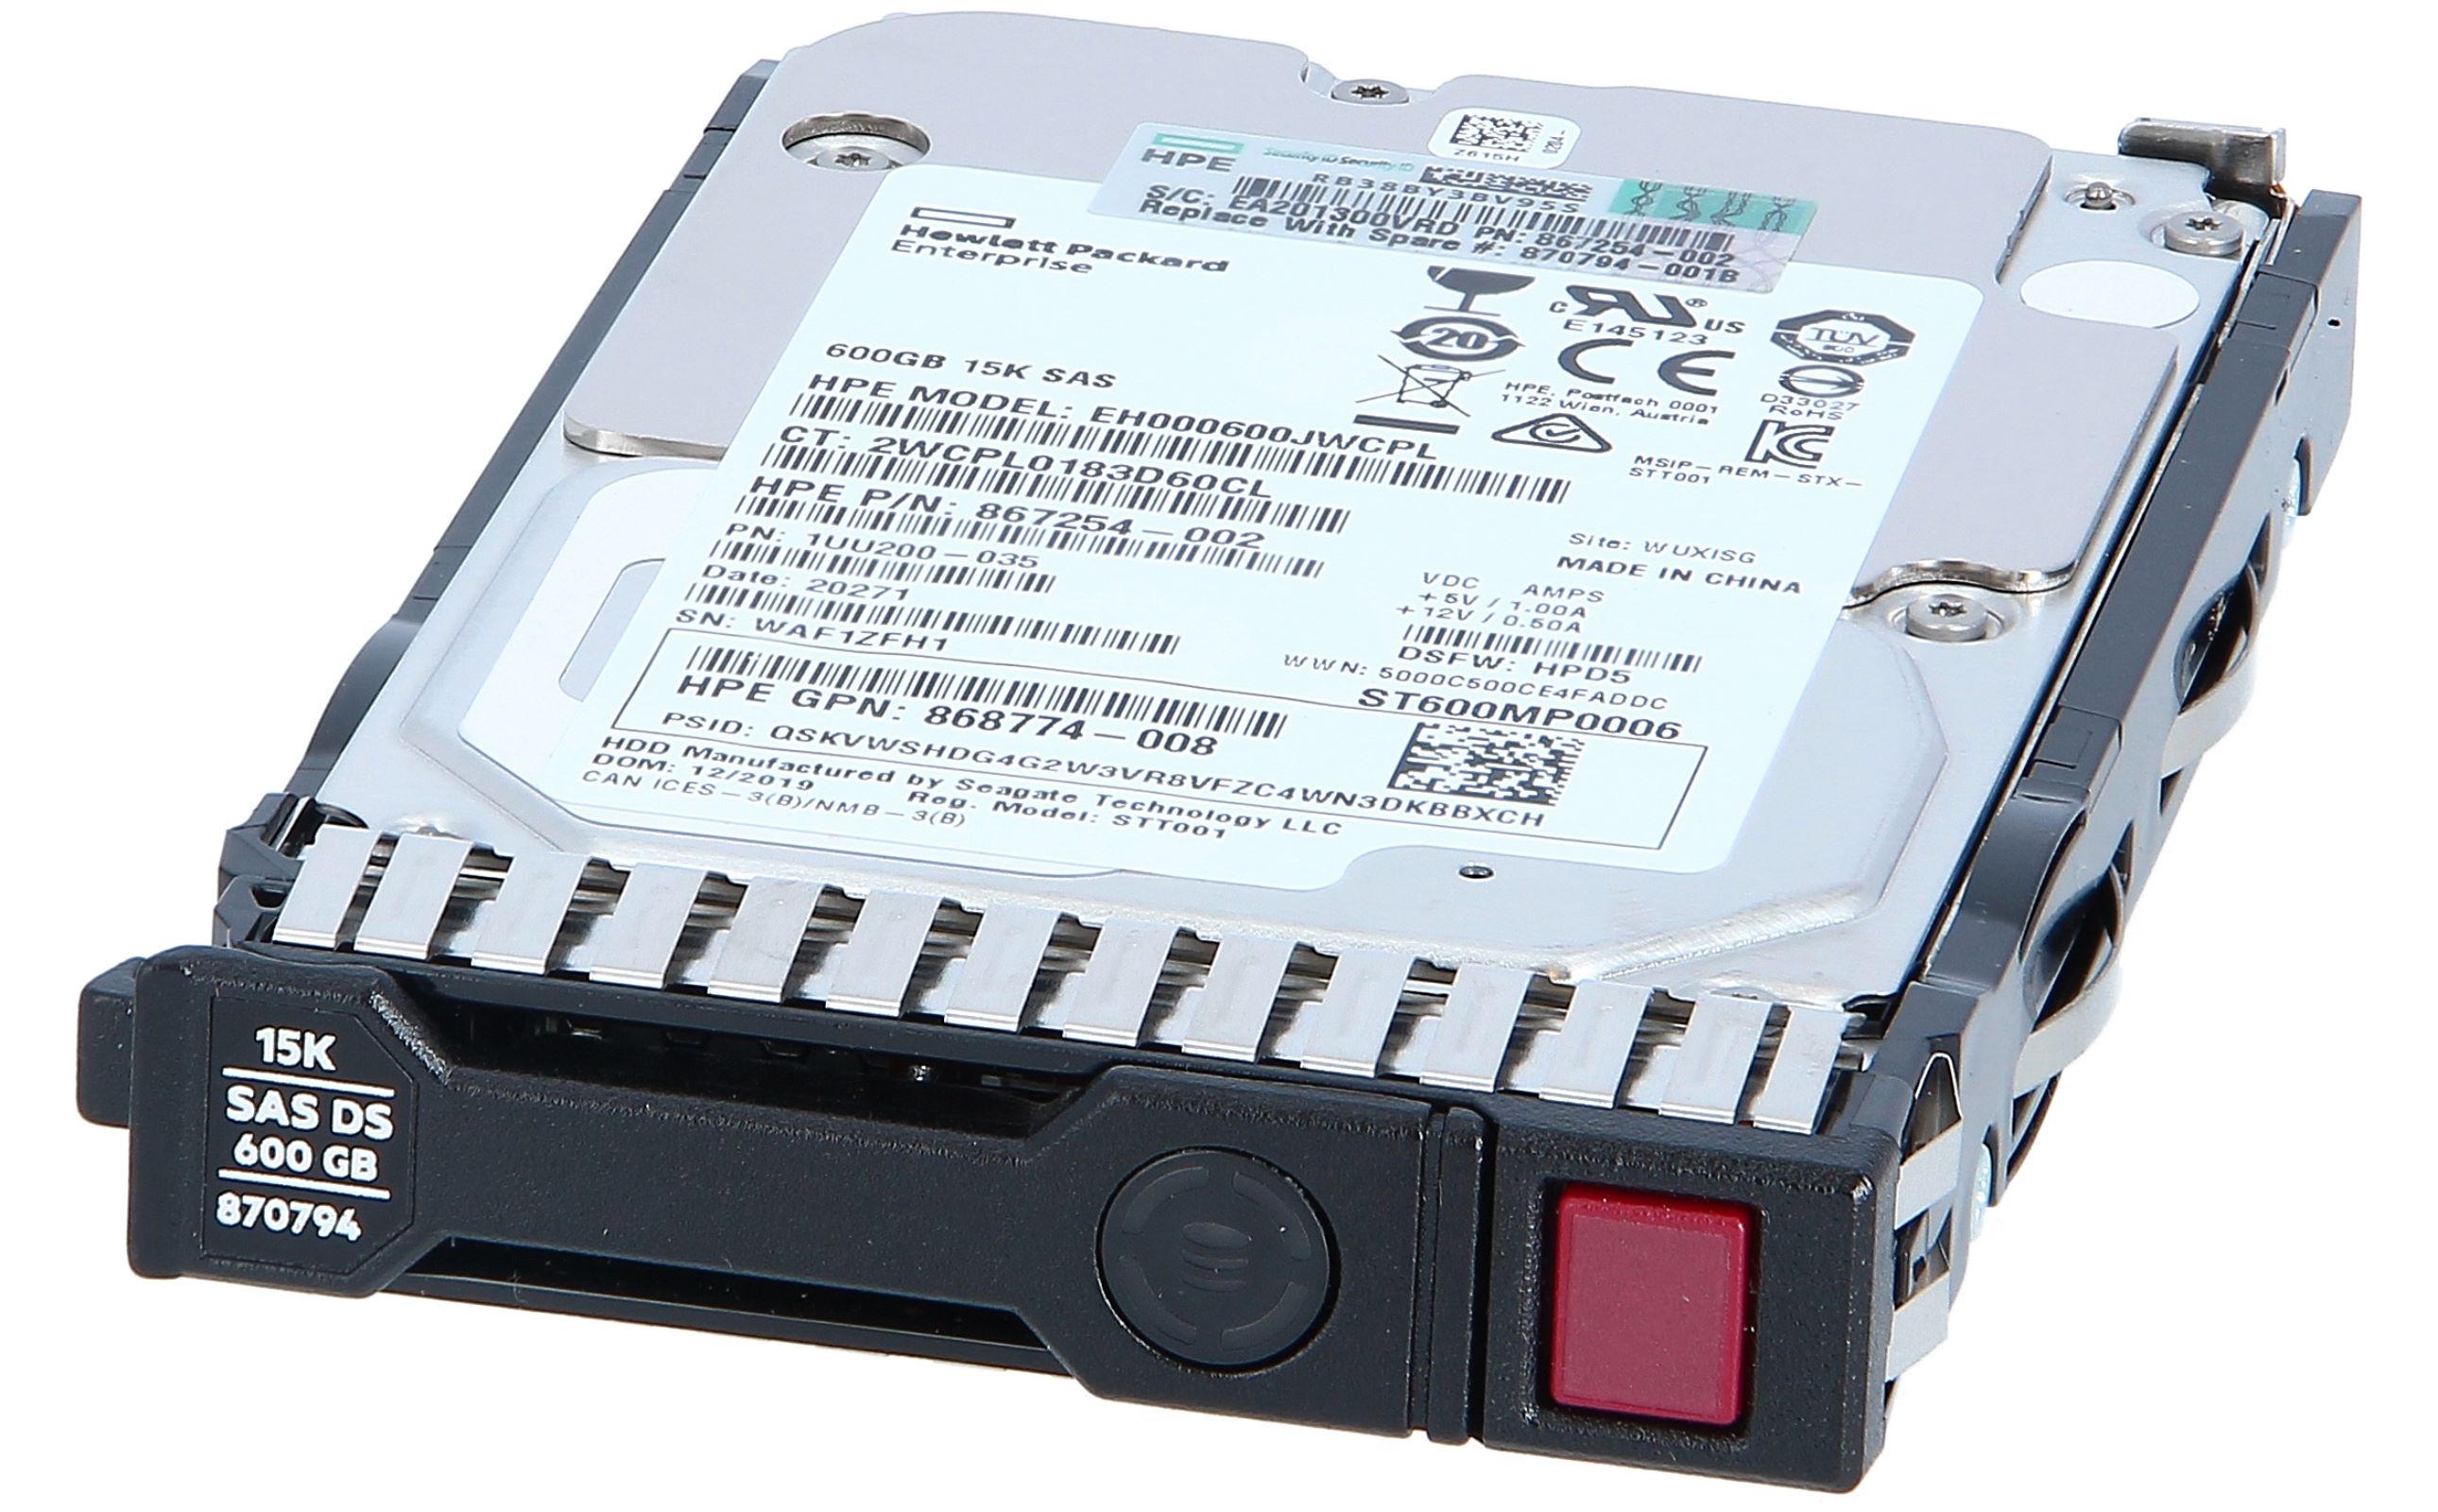  HP 872475-K21 300GB 10krpm SC 2.5型 12G SAS DS ハードディスクドライブ